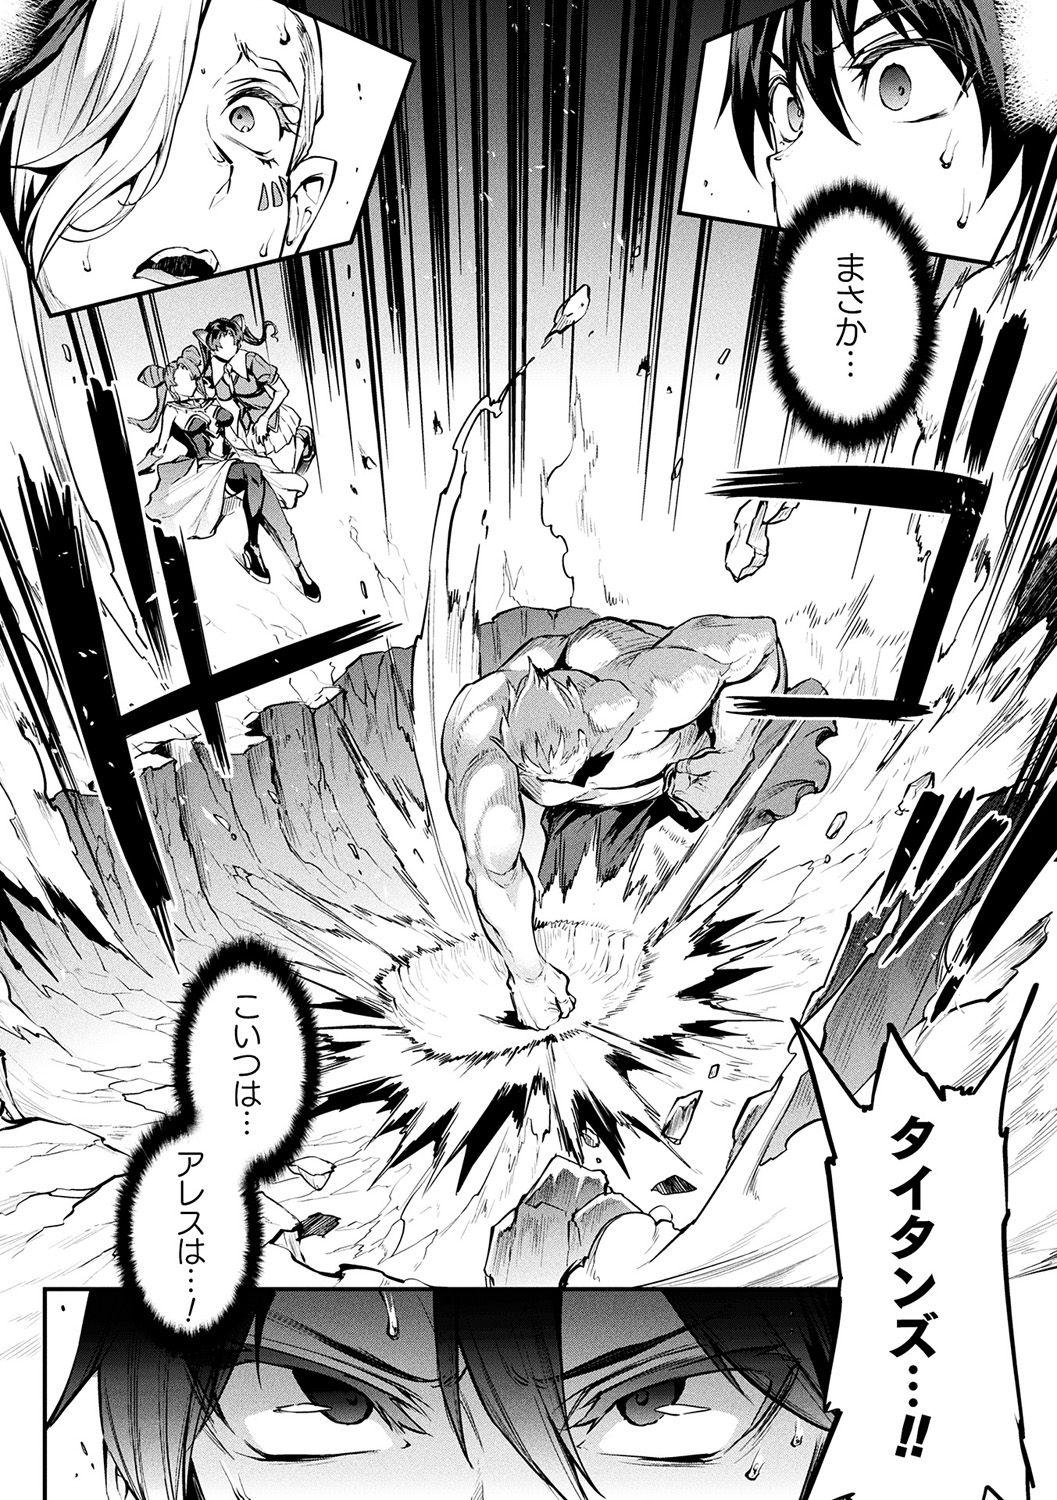 [Erect Sawaru] Raikou Shinki Igis Magia II -PANDRA saga 3rd ignition- + Denshi Shoseki Tokuten Digital Poster [Digital] 144